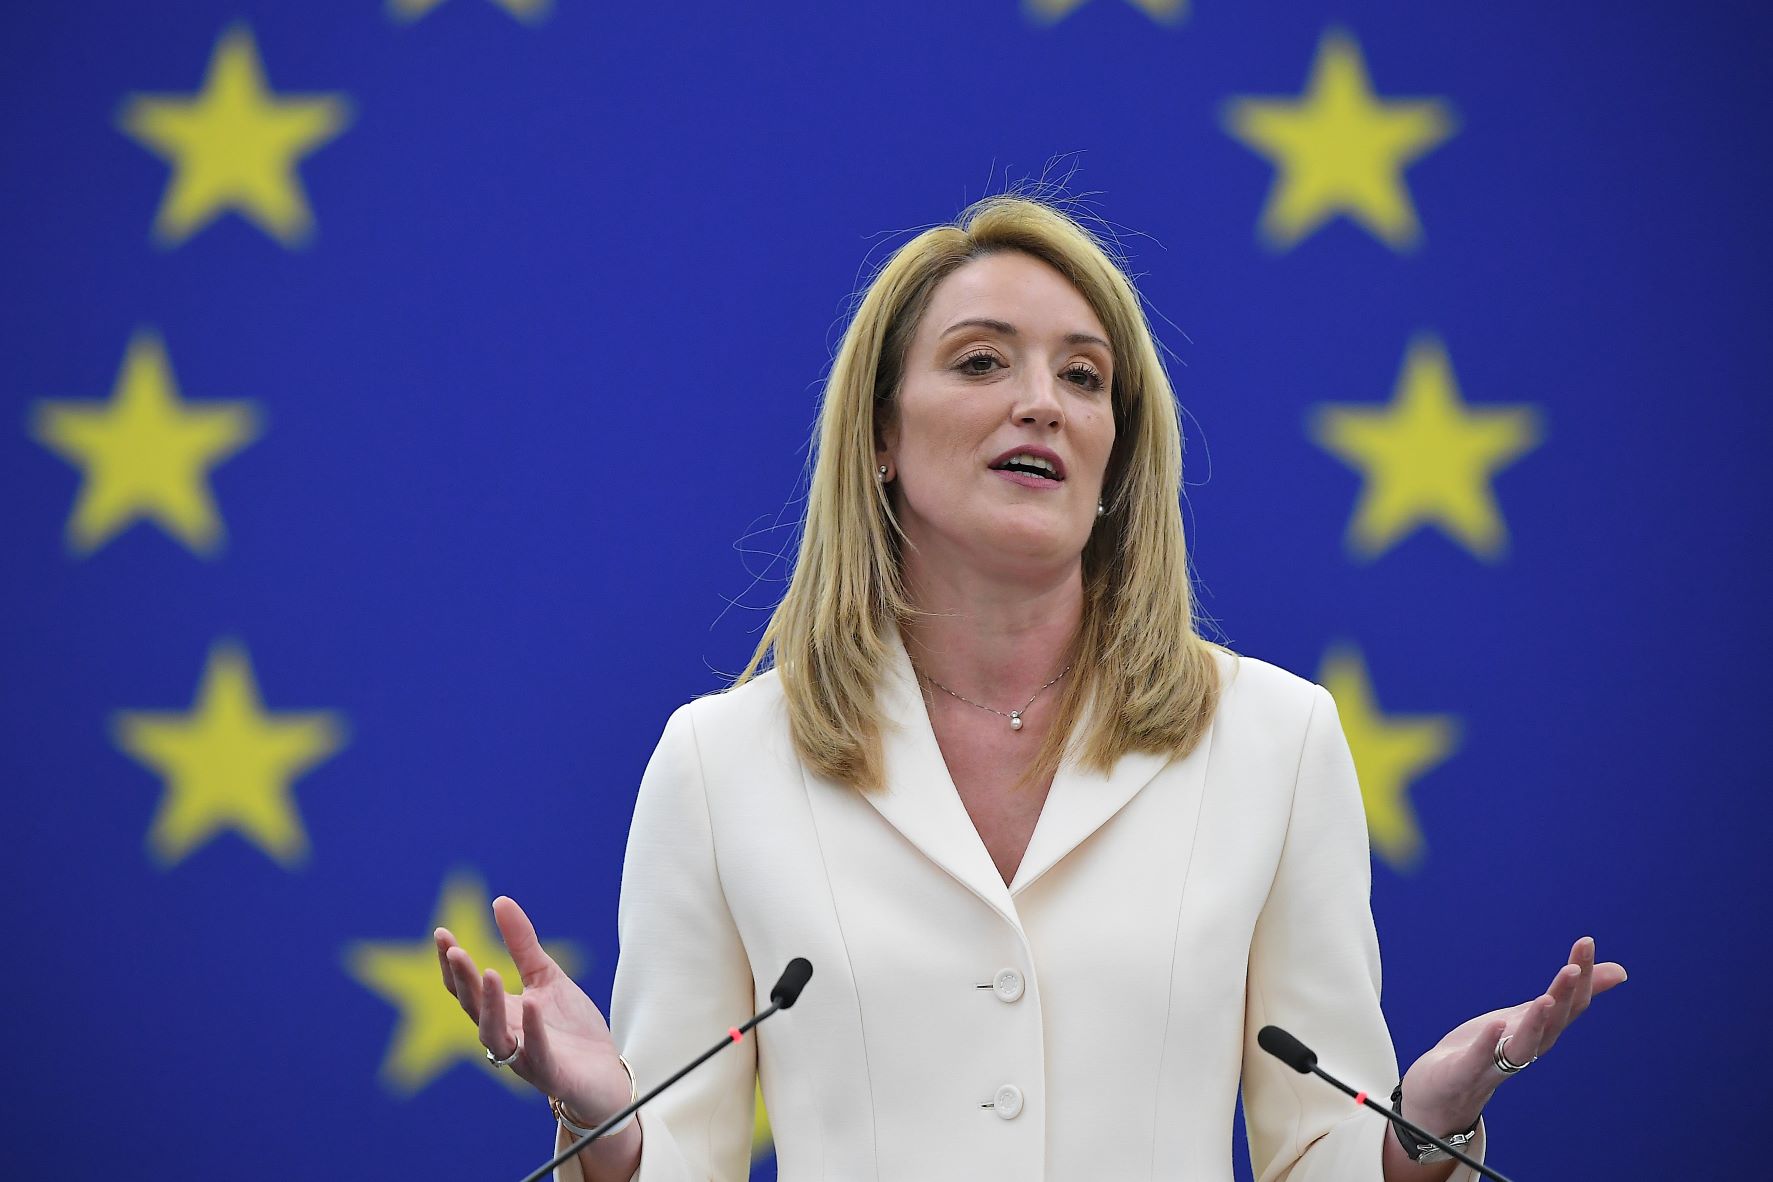 La conservatrice maltaise Roberta Metsola a été élue mardi présidente du Parlement européen